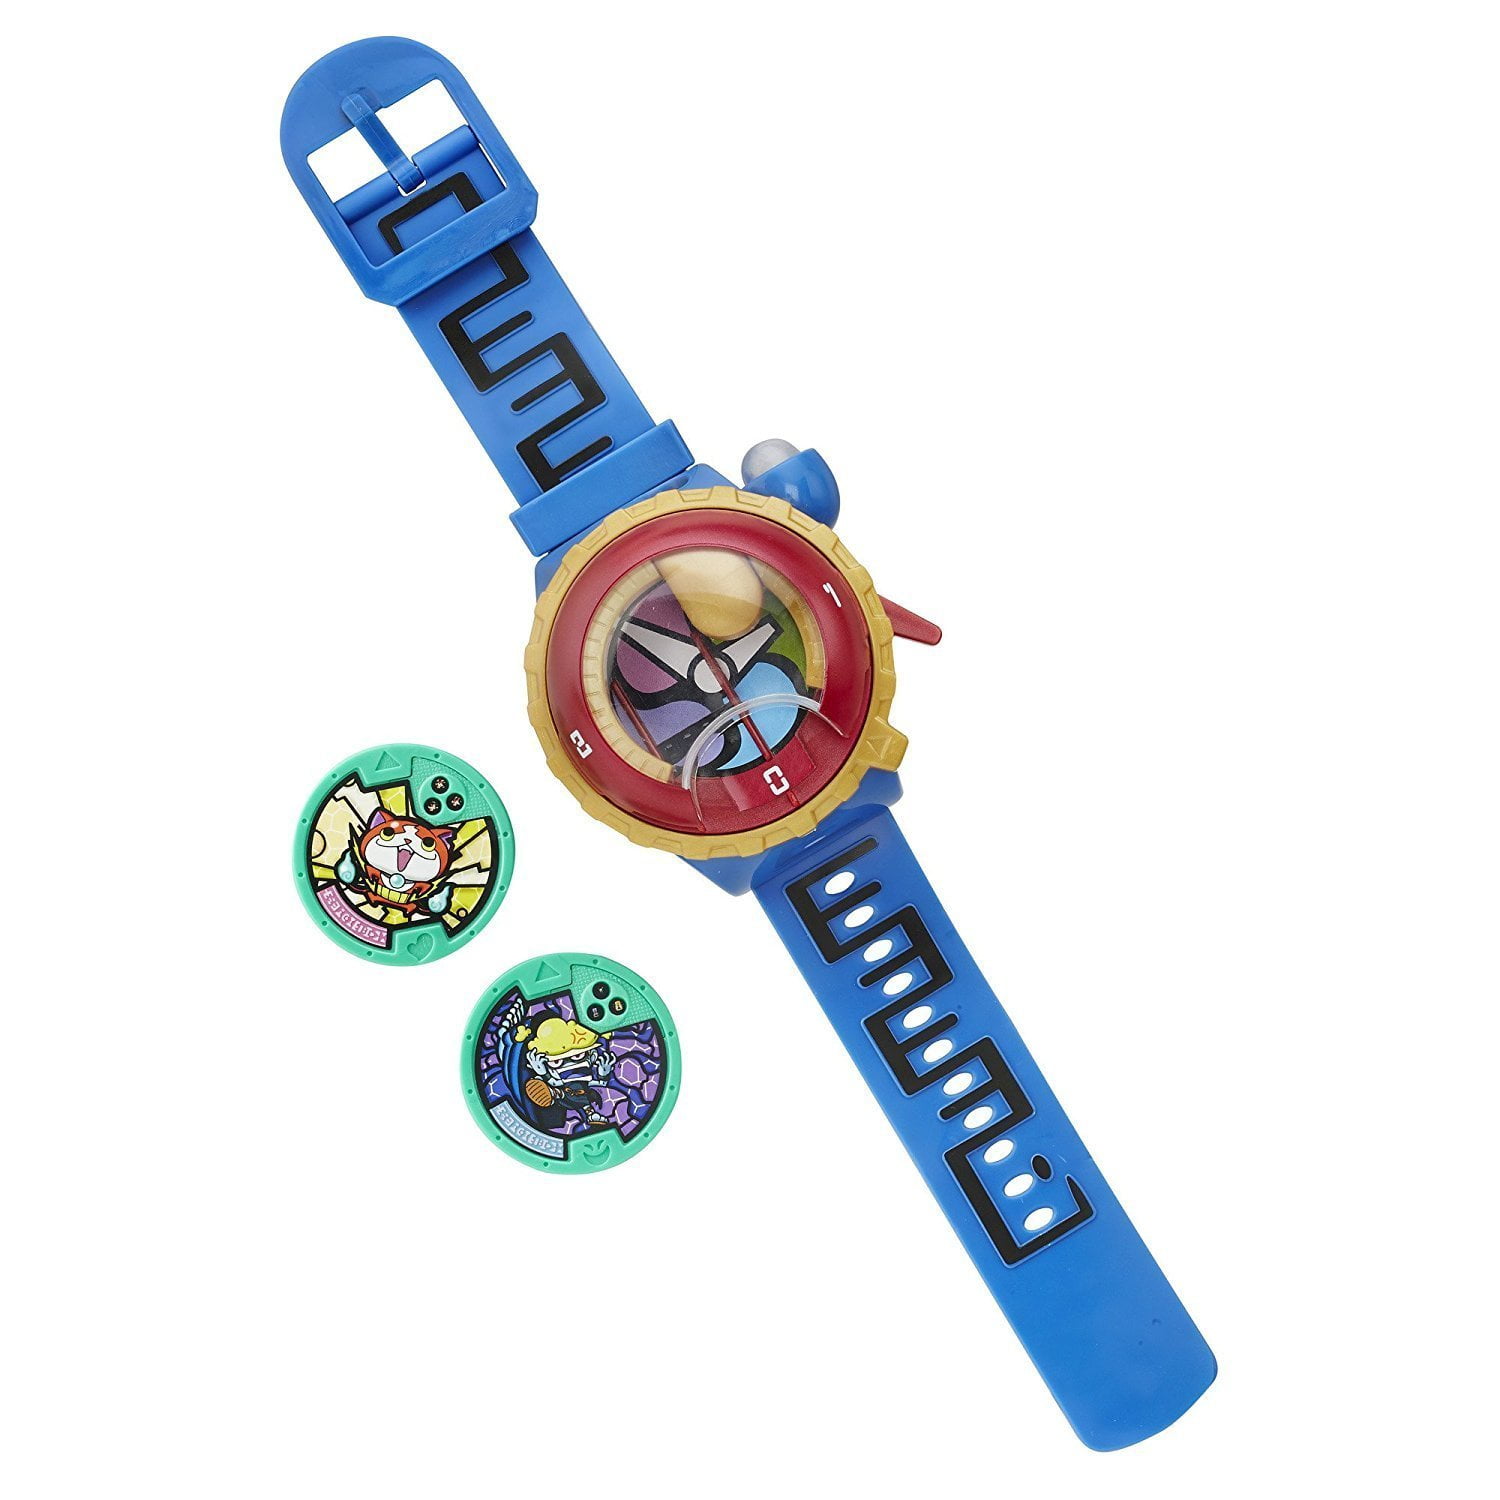 Unboxing - Brinquedo Yo-Kai Watch Zero 